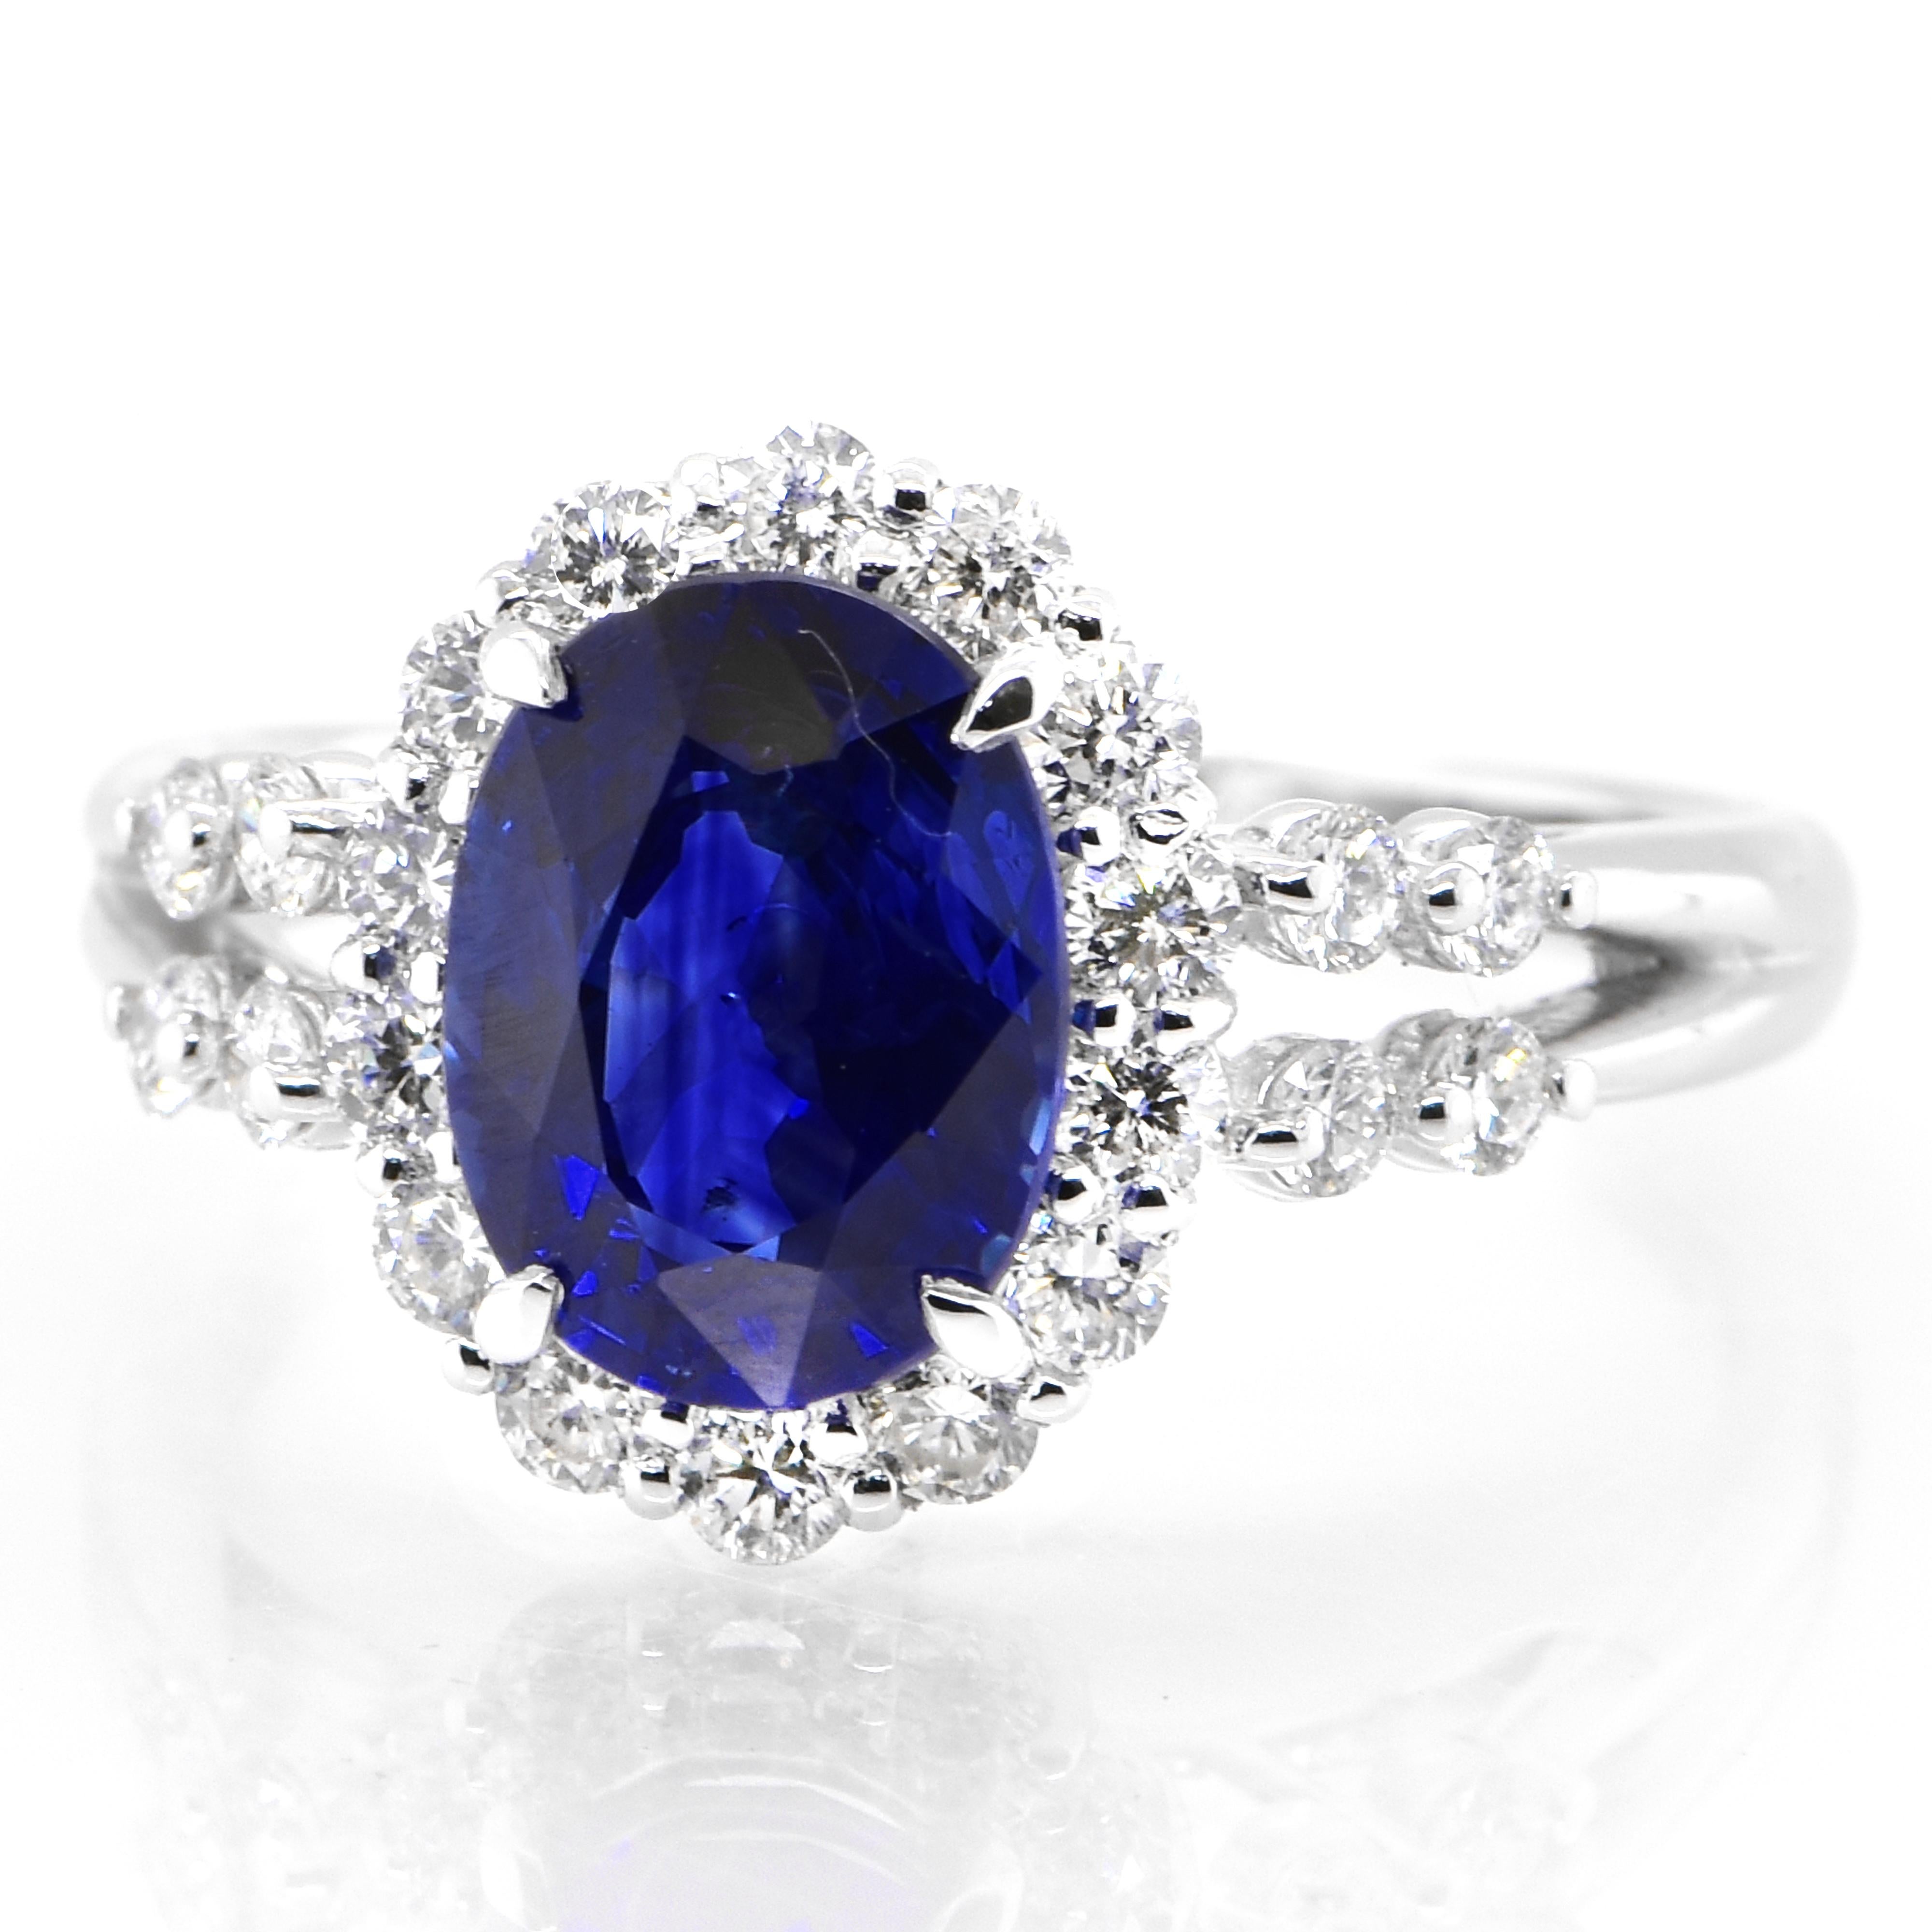 Cette magnifique bague est ornée d'un saphir bleu royal de 2,33 carats certifié AIGS et d'accents de diamants de 0,61 carats, le tout serti dans du platine. Les saphirs ont une durabilité extraordinaire - ils excellent en termes de dureté ainsi que